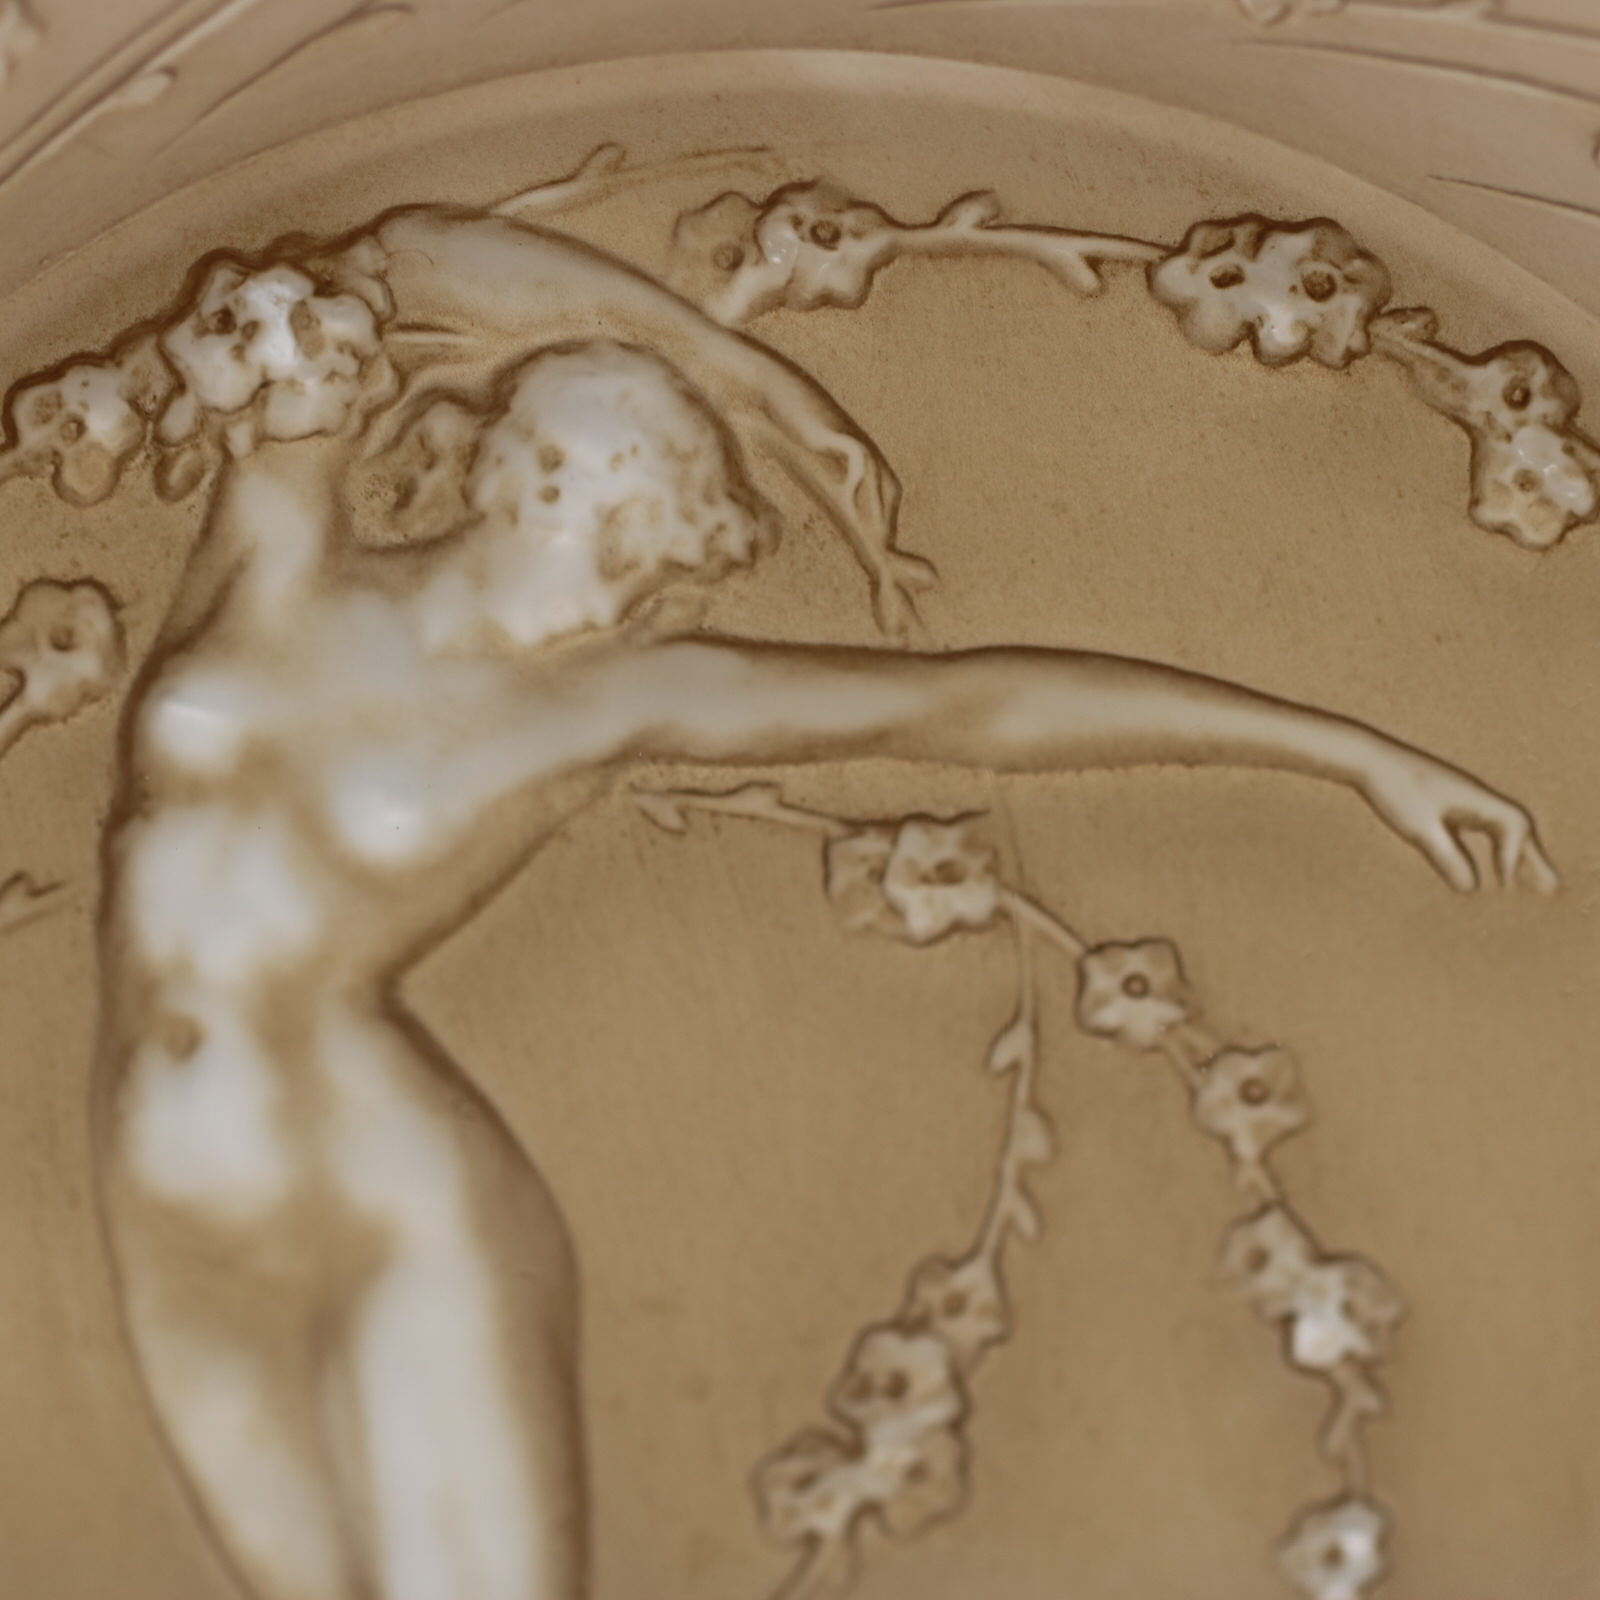 Rene Lalique Glass 'Une Figurine et Fleurs' Plate - Image 7 of 8